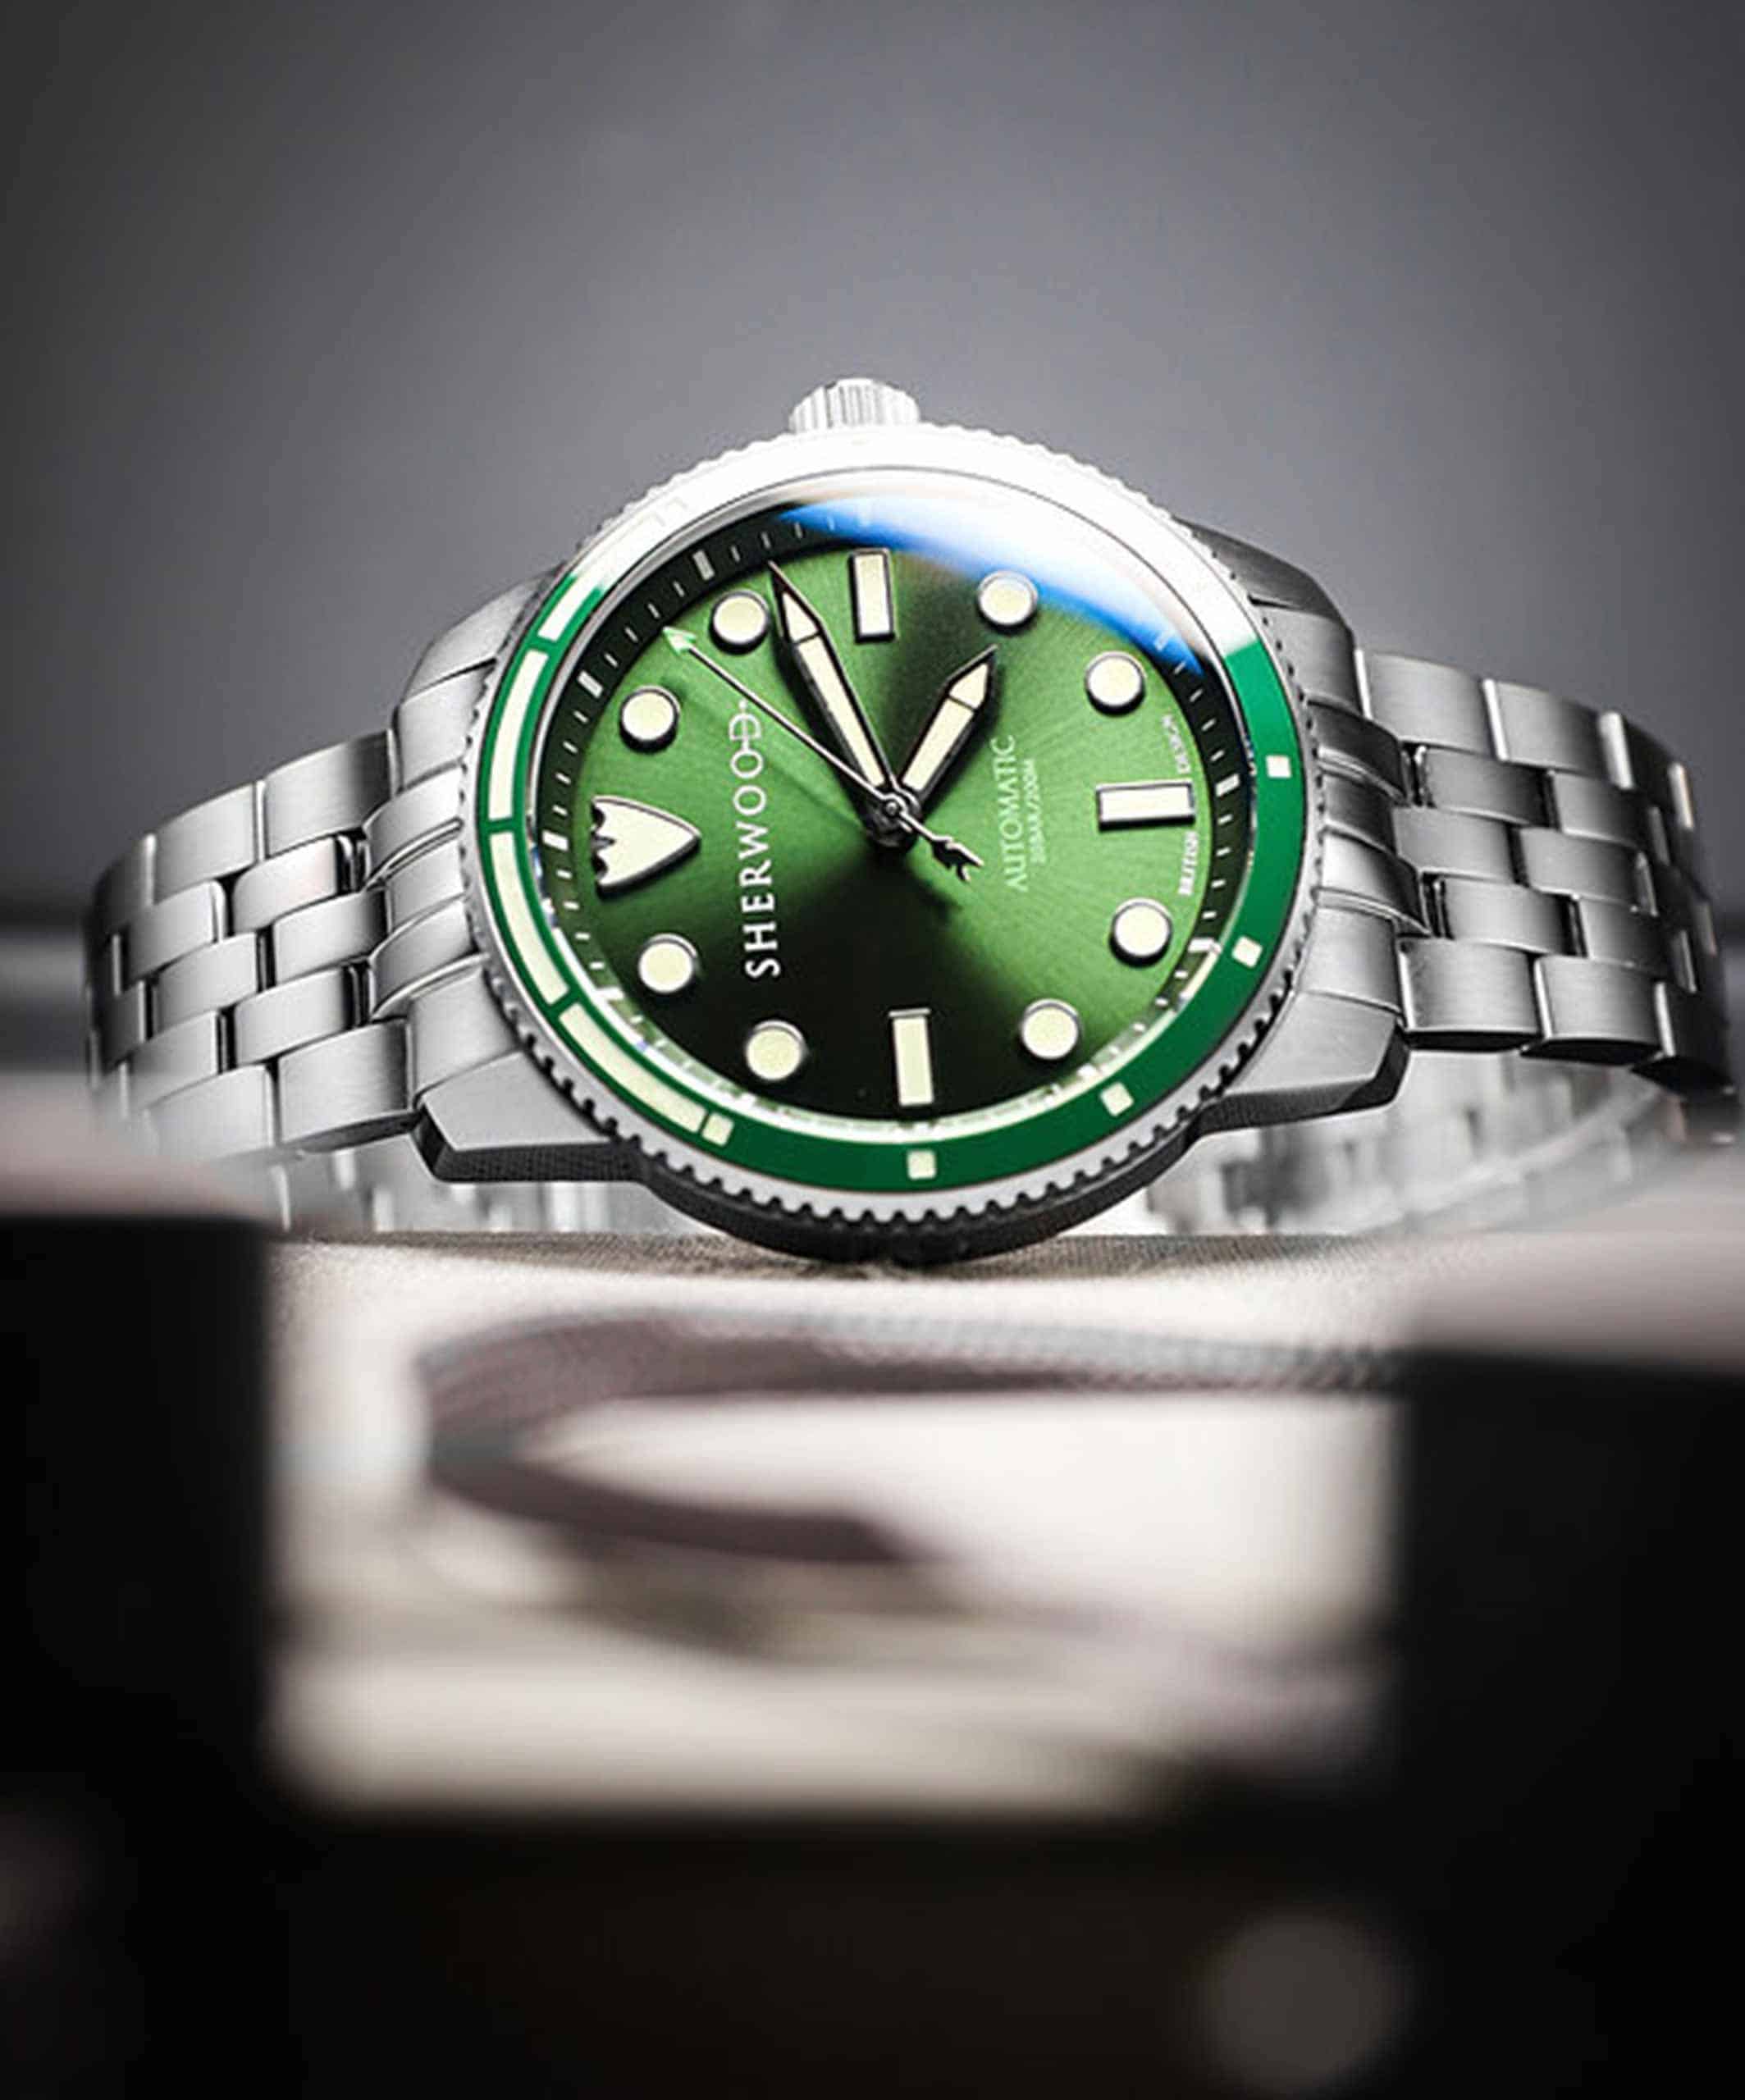 Hands-On: Speake-Marin Openworked Sandblasted Titanium Watch